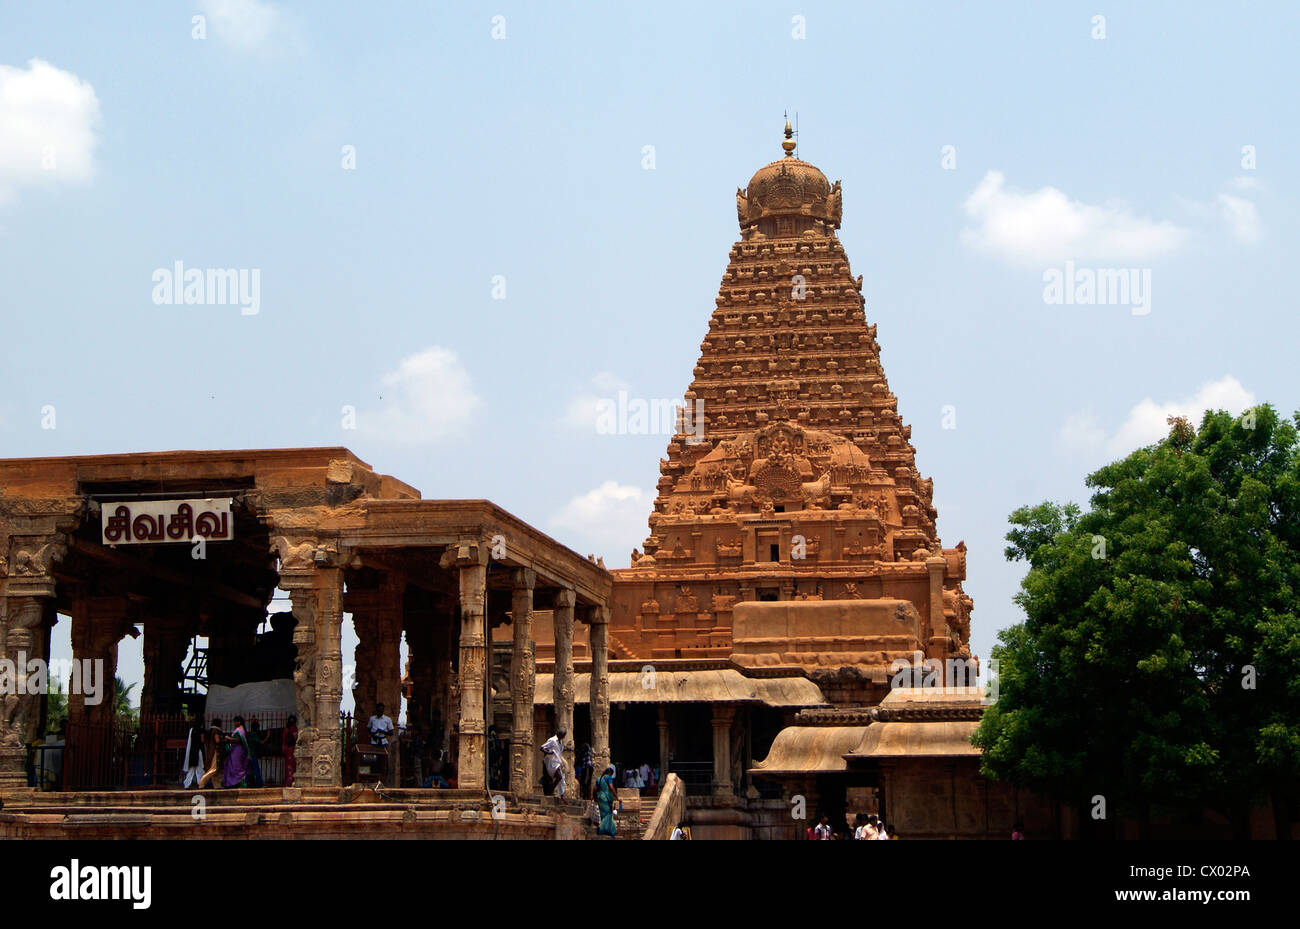 Tanjore Brihadeeswarar Templo plena vista frontal y lateral.'Gran Templo' en Thanjavur es la obra maestra de la arquitectura de piedra de la India Foto de stock